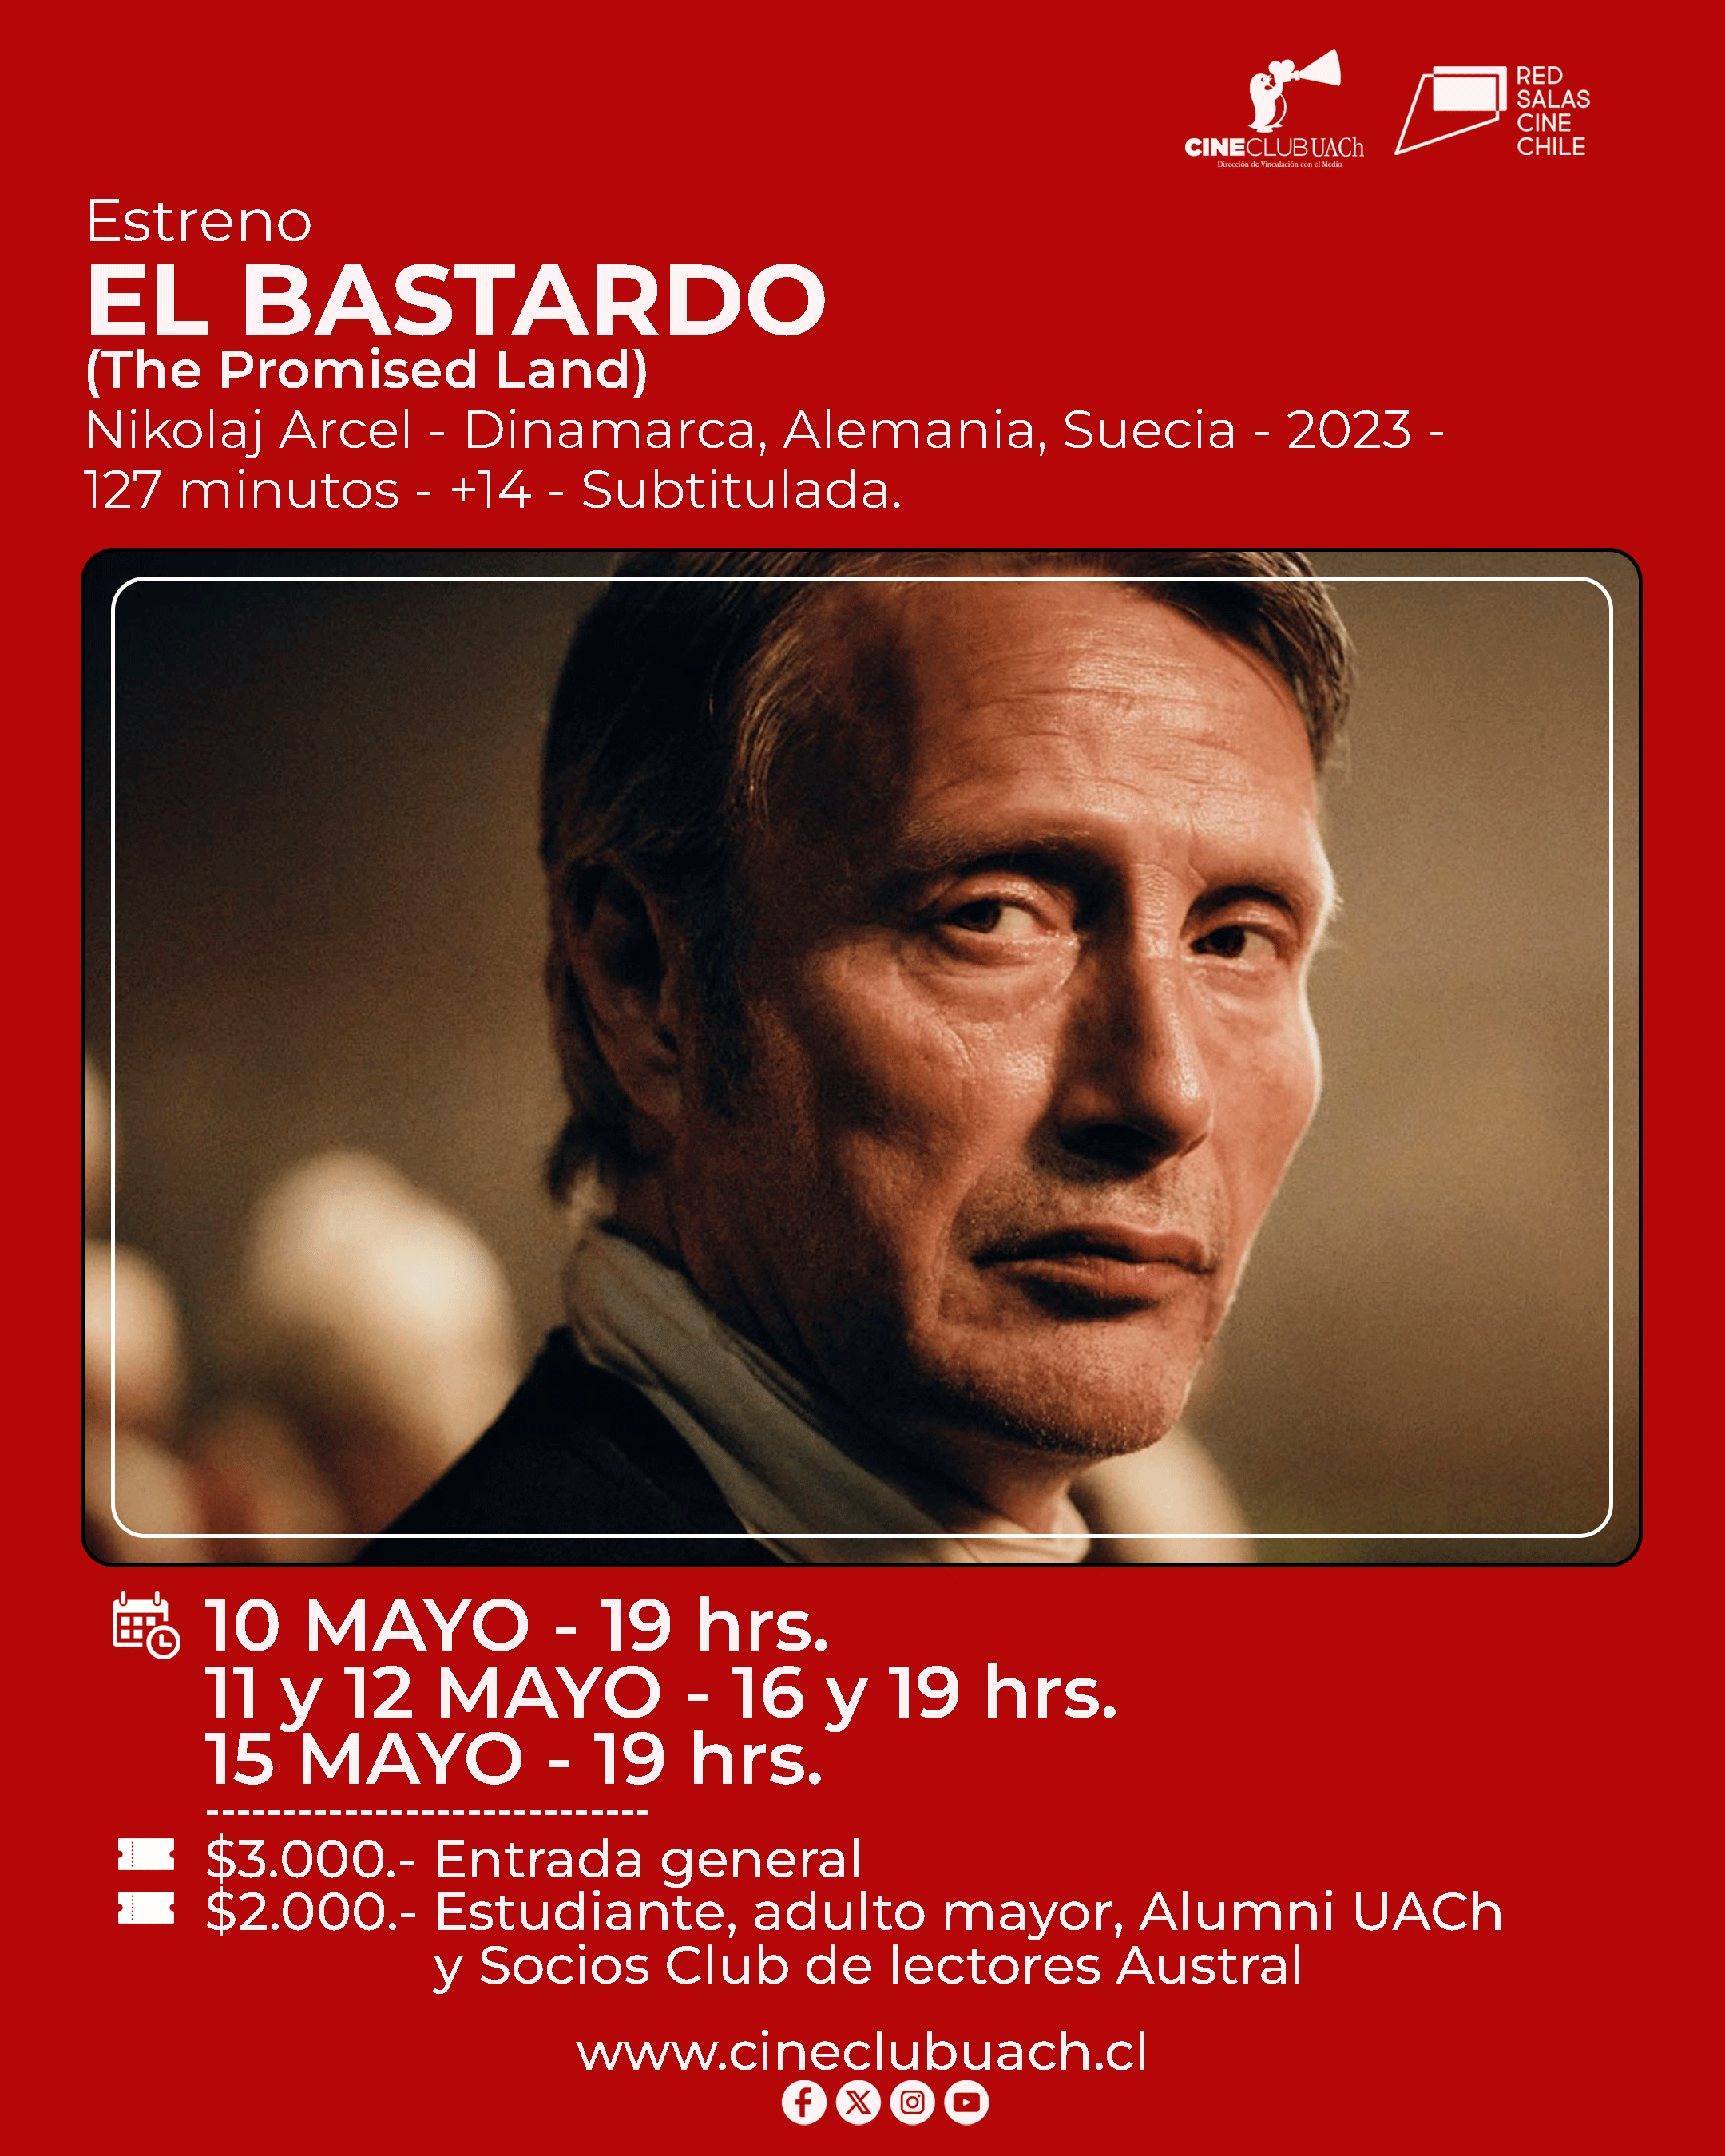 El drama histórico “El bastardo” se estrenará este fin de semana en el Cine Club UACh